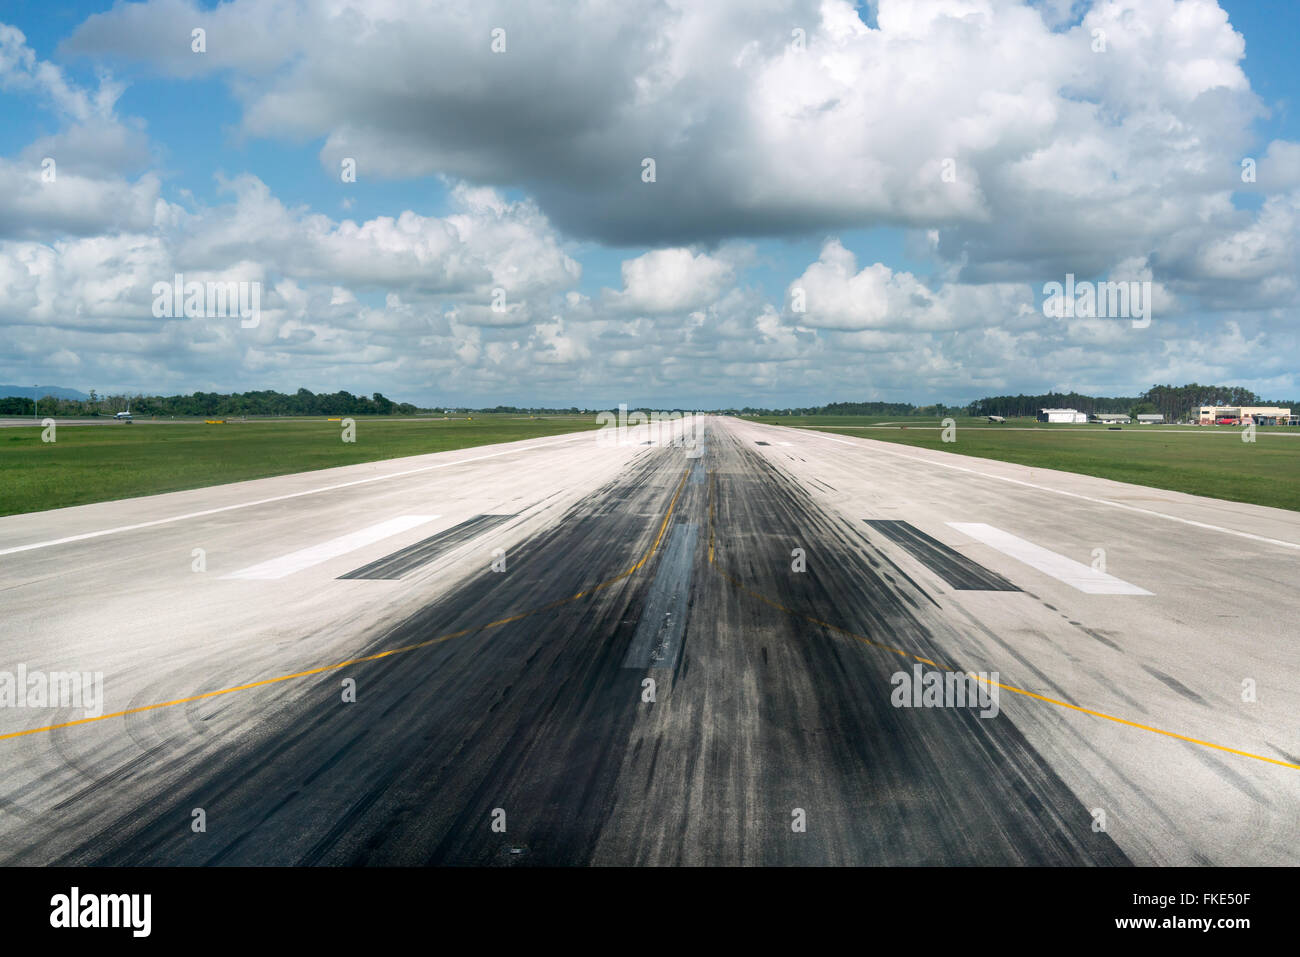 Runway of airport, Trinidad, Trinidad and Tobago Stock Photo